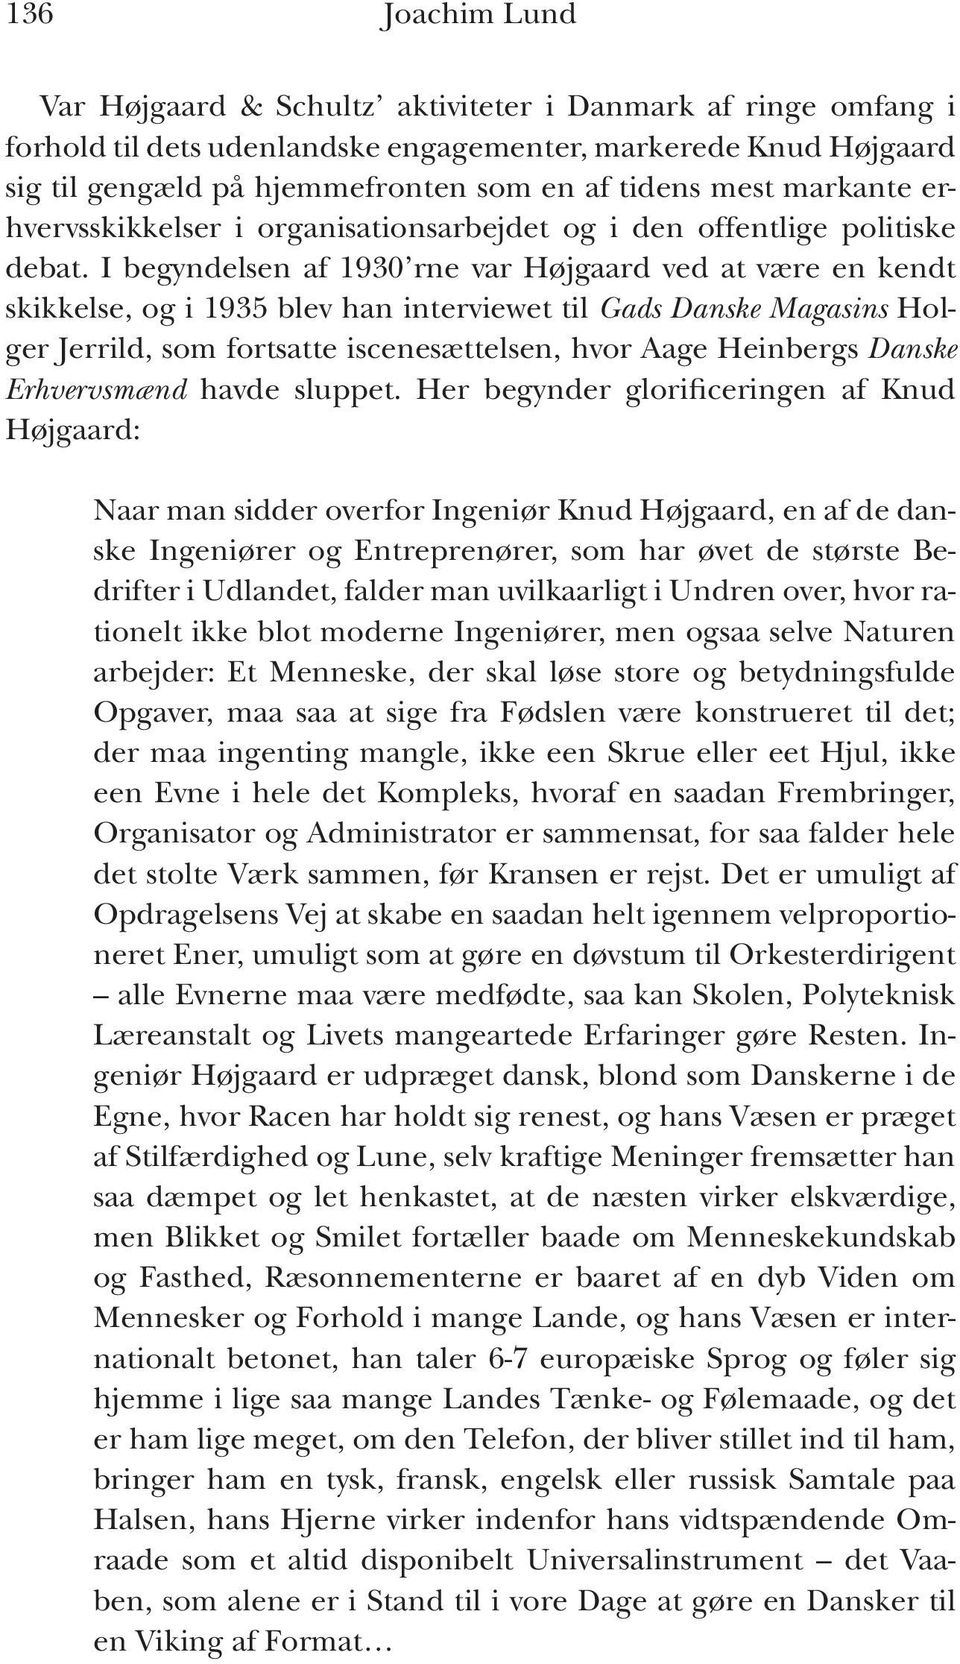 I begyndelsen af 1930 rne var Højgaard ved at være en kendt skikkelse, og i 1935 blev han interviewet til Gads Danske Magasins Holger Jerrild, som fortsatte iscenesættelsen, hvor Aage Heinbergs